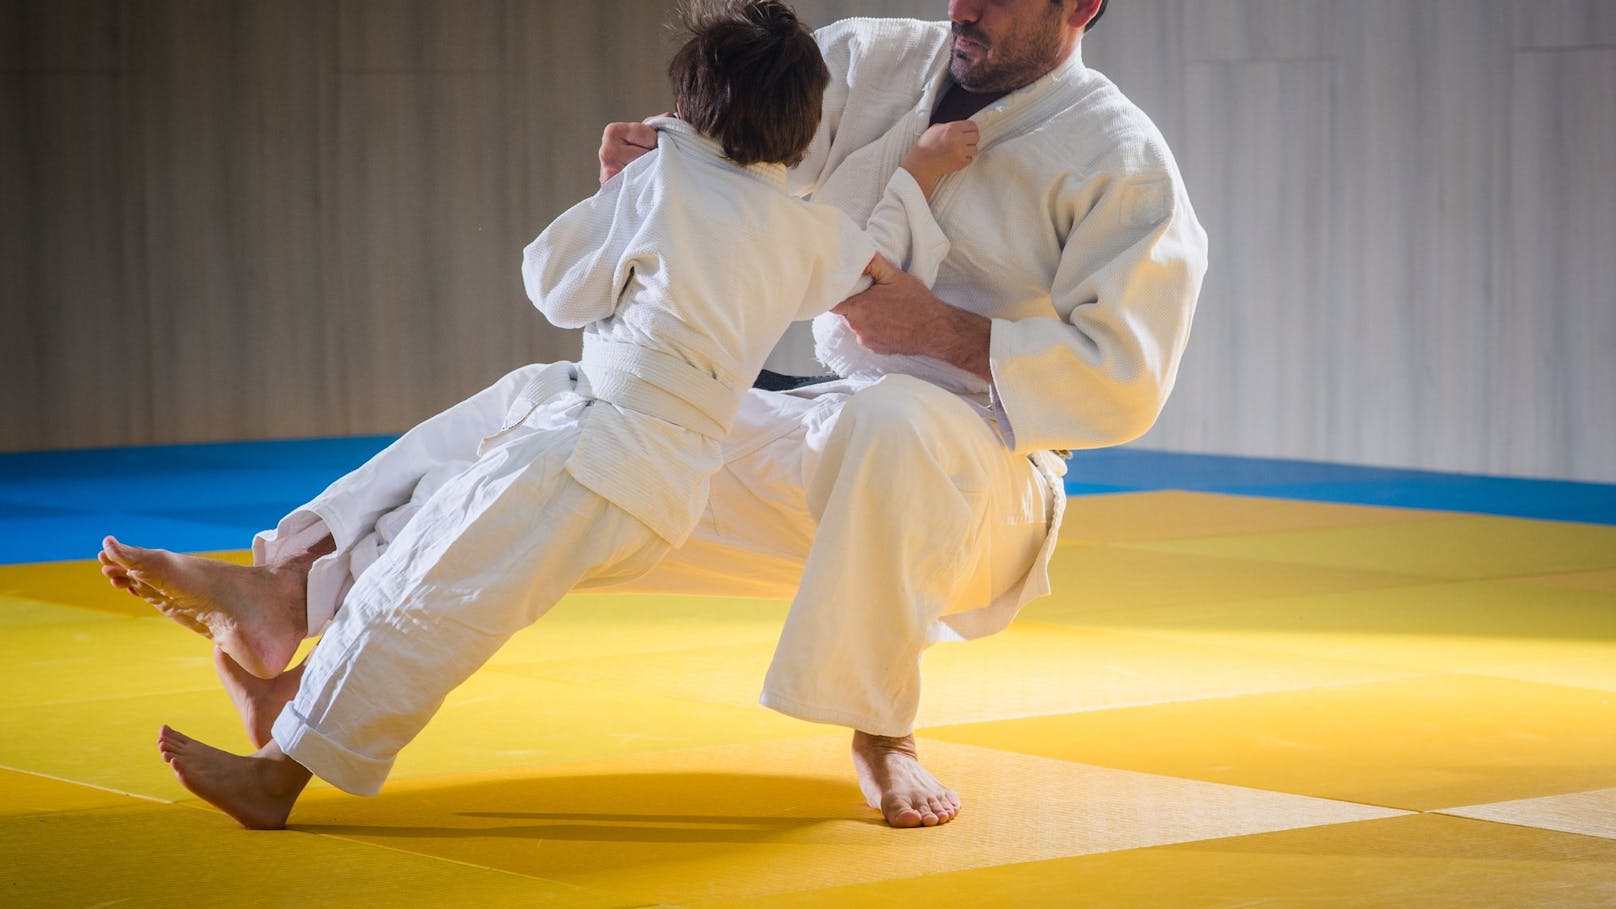 Ein Judoka bringt seinen Schüler zu Fall. (Symbolbild)